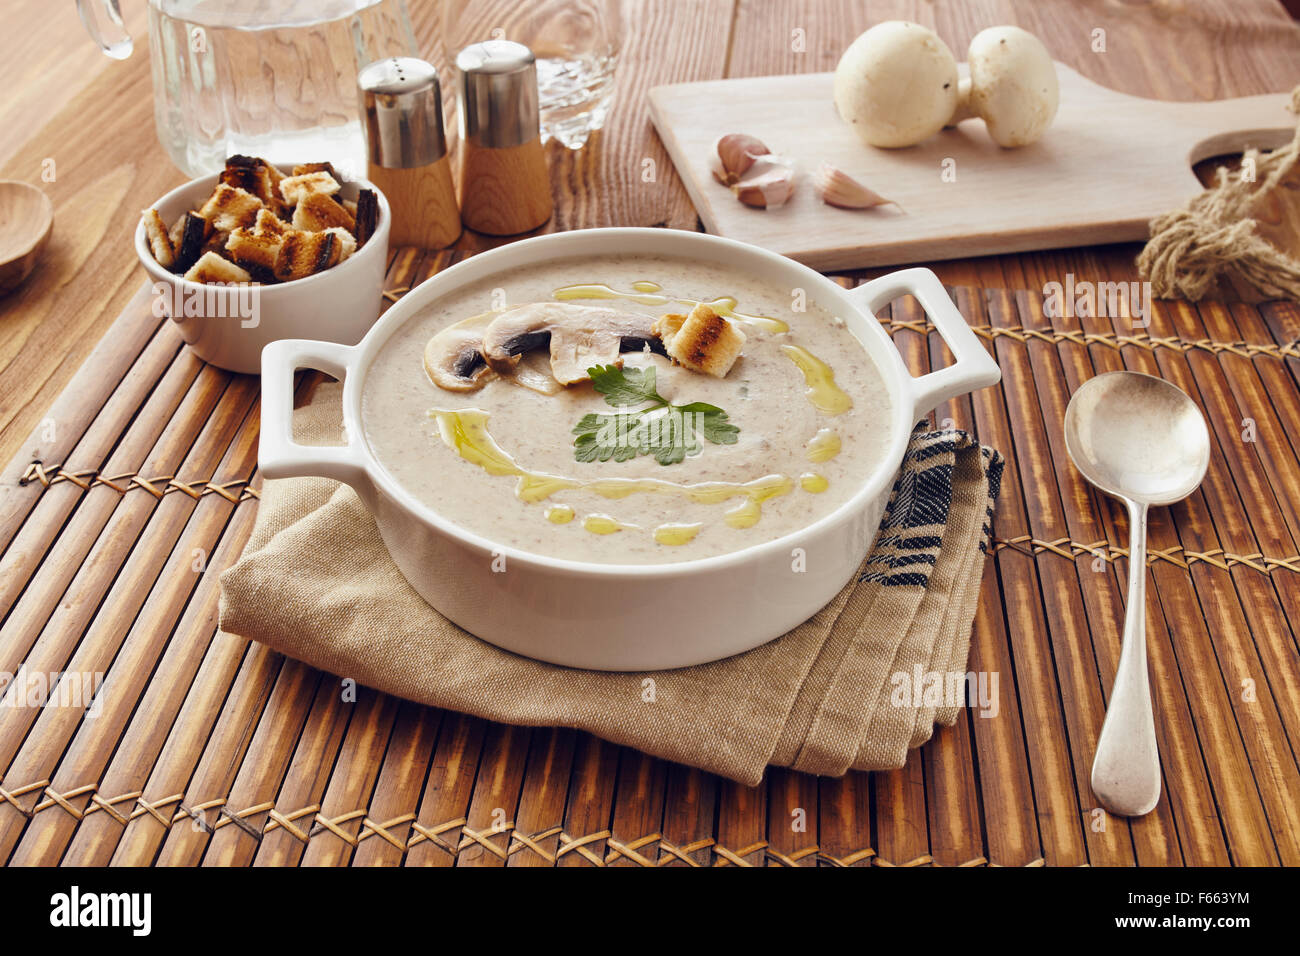 Champignon Cremesuppe auf einem Tisch mit Brot, Knoblauch und rohe Pilze auf einem Schneidebrett weiß. Salz und Pfeffer auf dem Tisch. Stockfoto